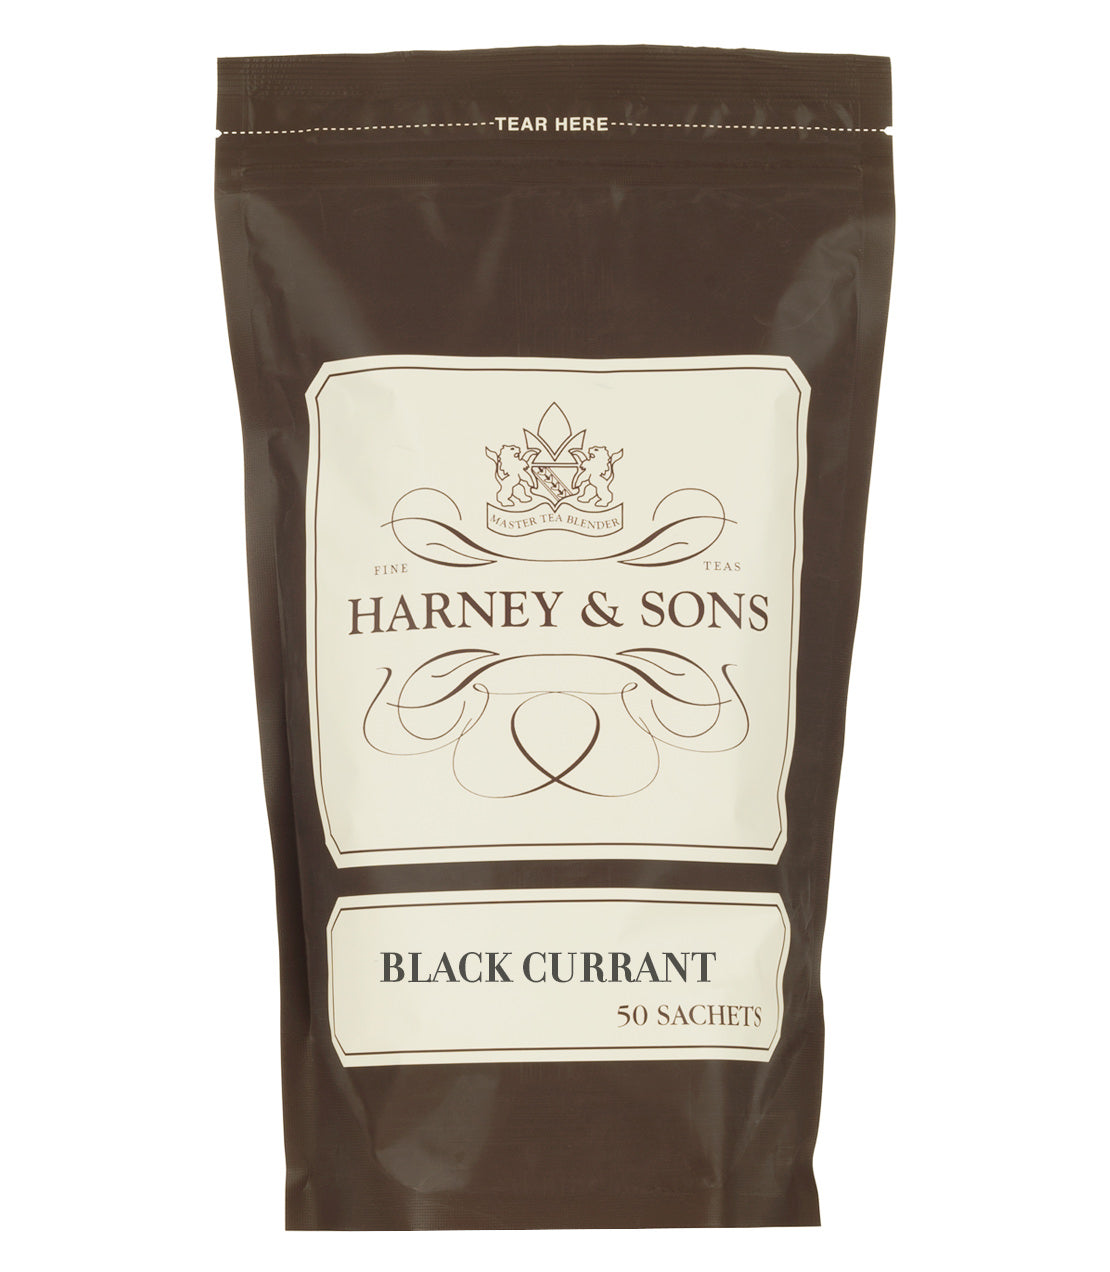 Black Currant Tea - Sachets Bag of 50 Sachets - Harney & Sons Fine Teas